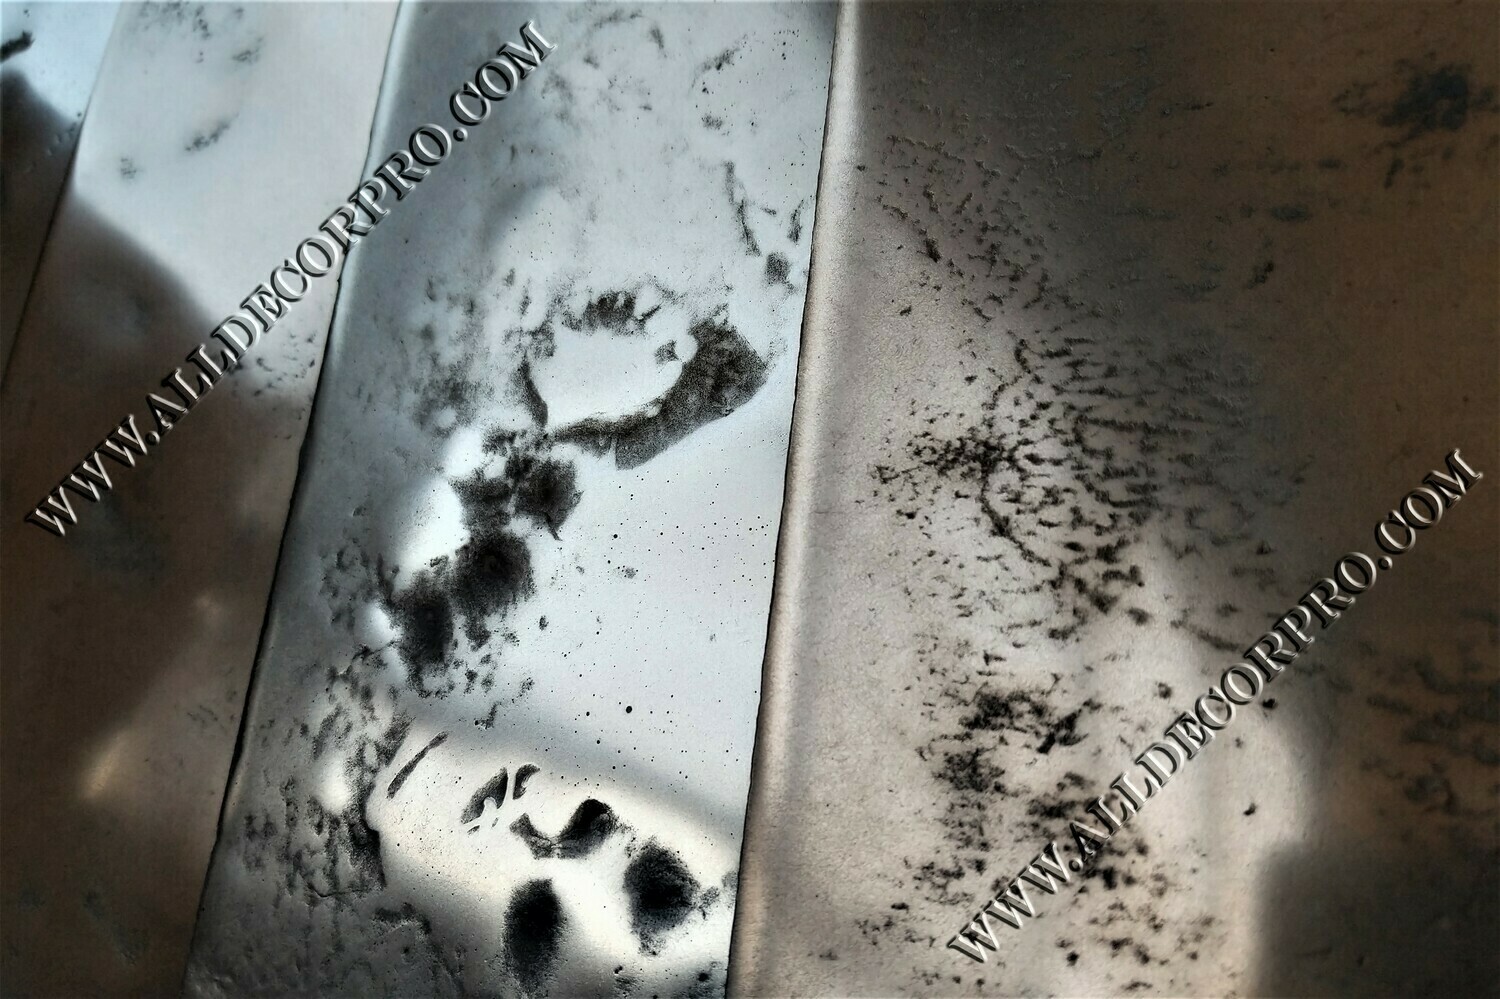 Образцы декоративного покрытия жидкий металл Metallhaut с эффектом мятого металла